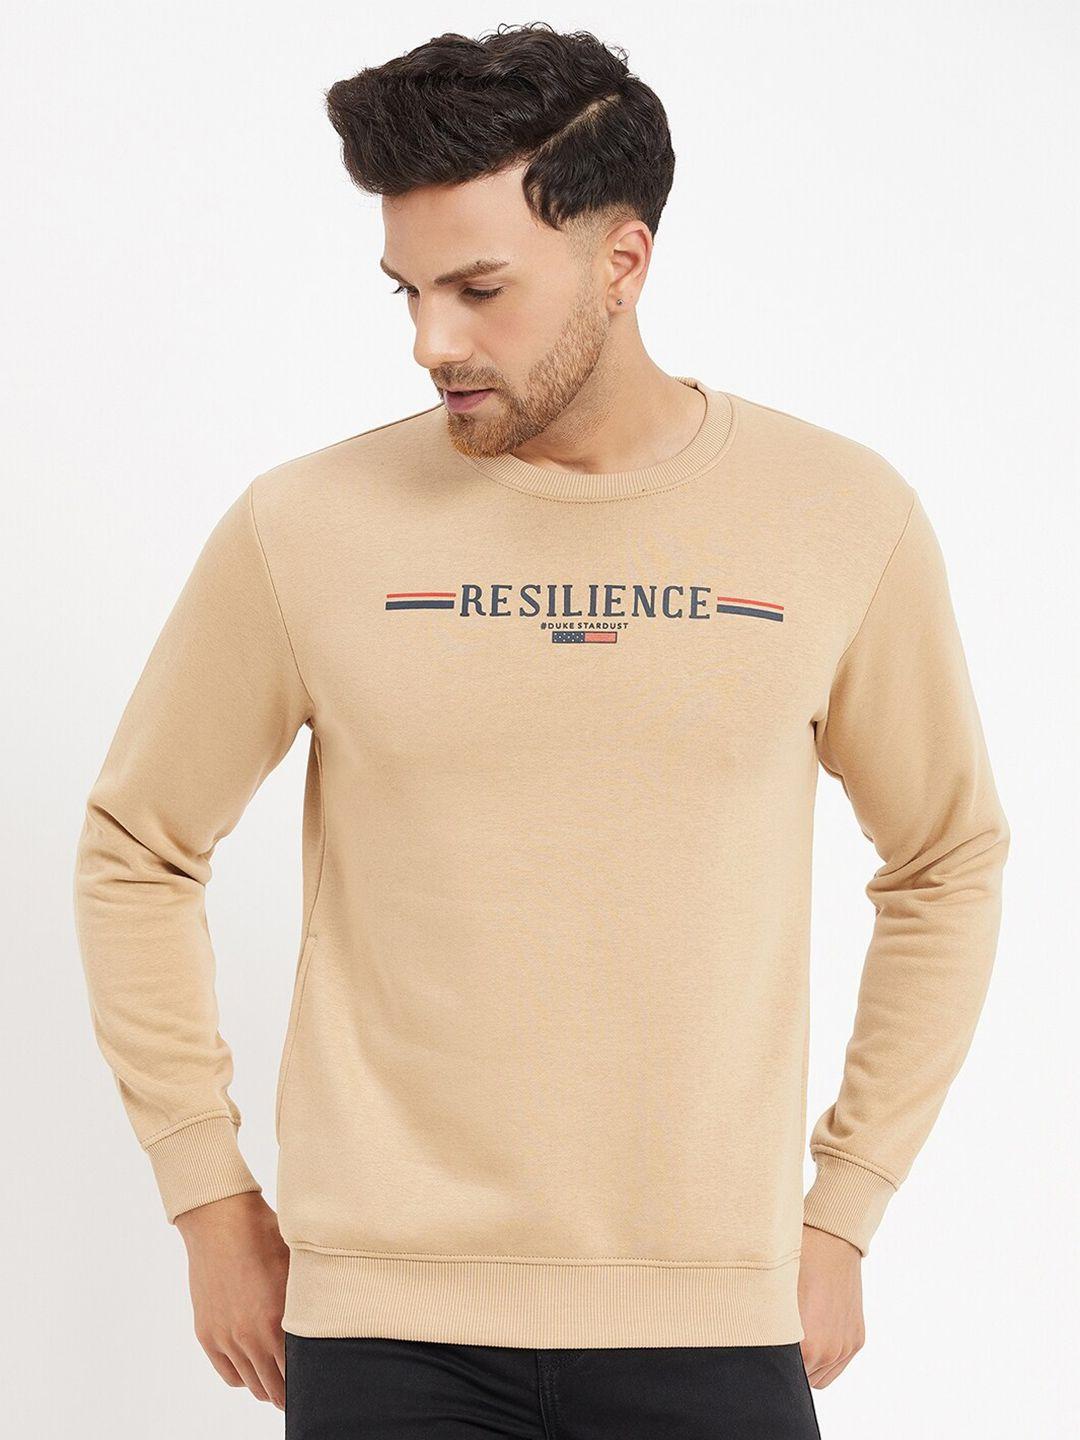 duke-typography-printed-round-neck-fleece-sweatshirts